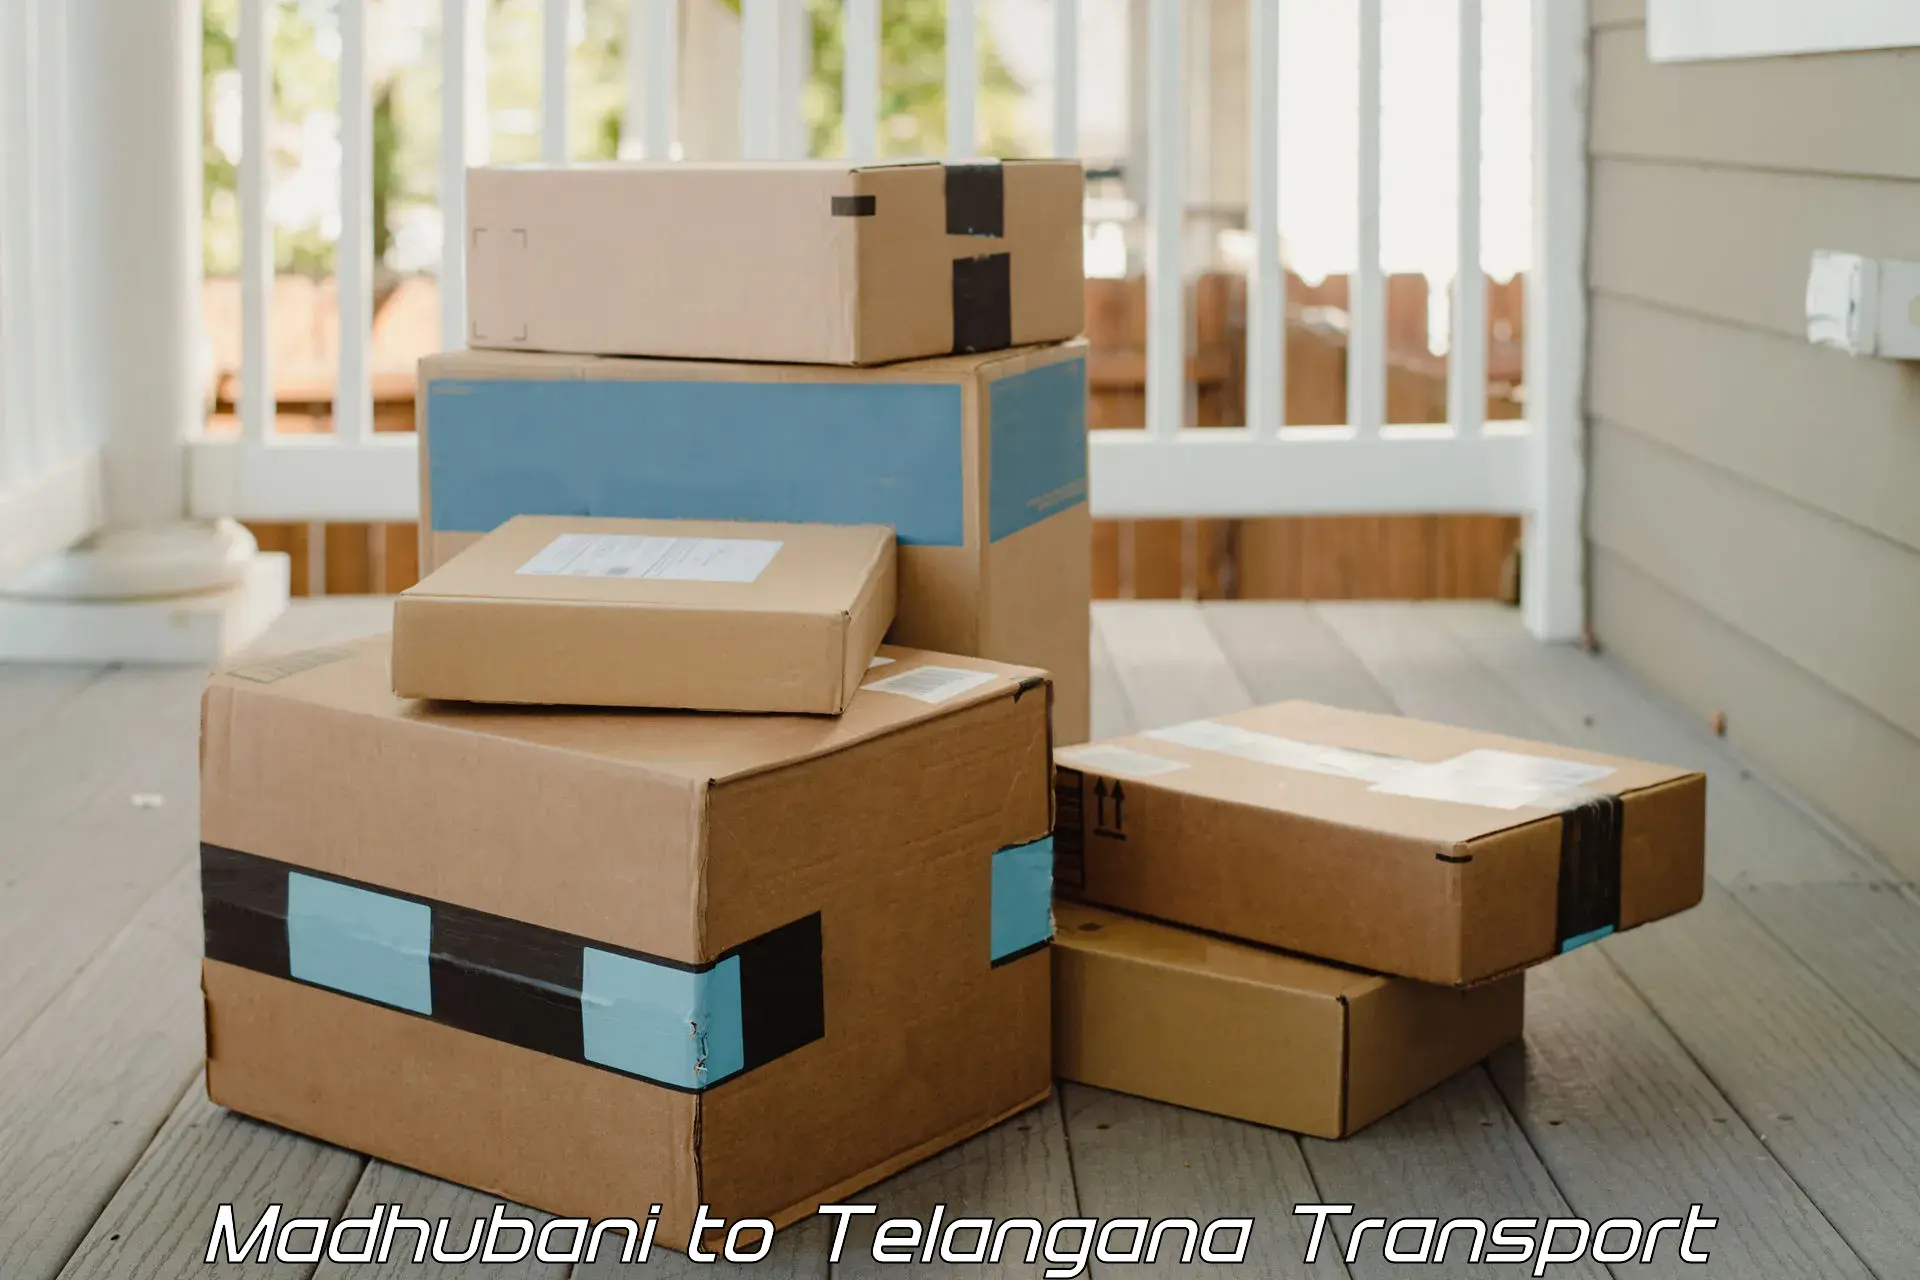 Logistics transportation services Madhubani to Telangana